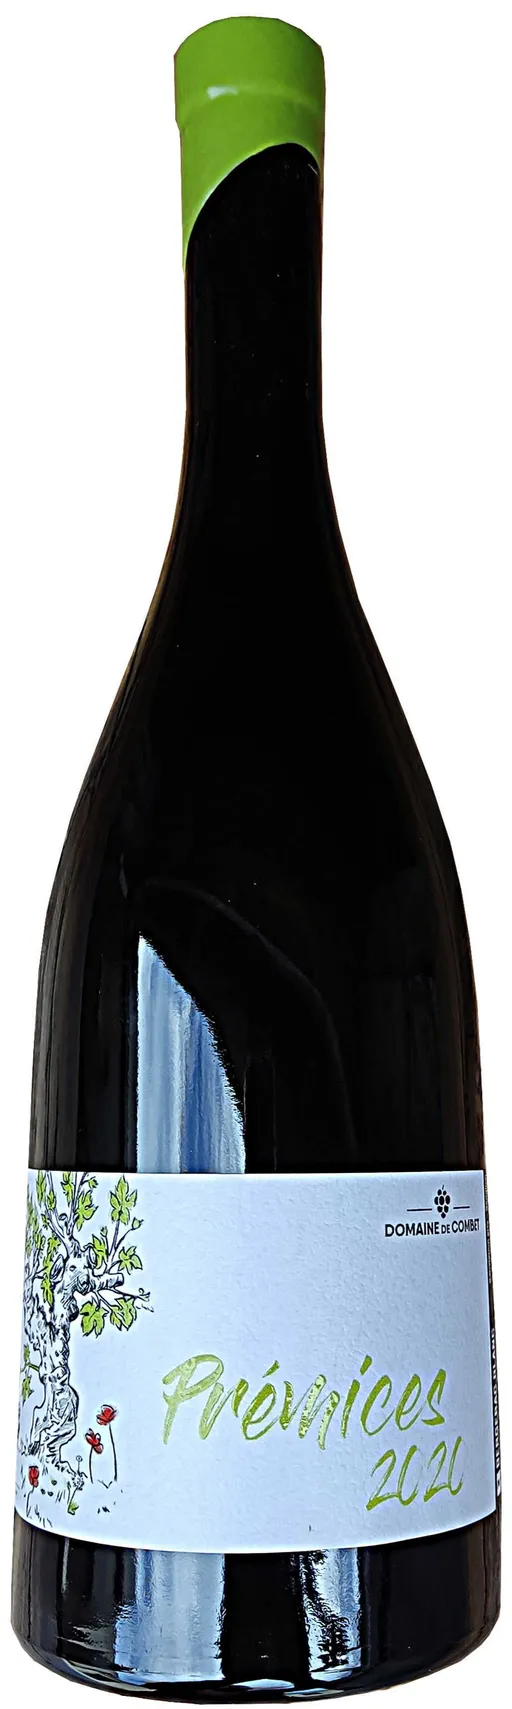 Earl de Combet PREMICES, White, 2021, Bergerac. Bottle image